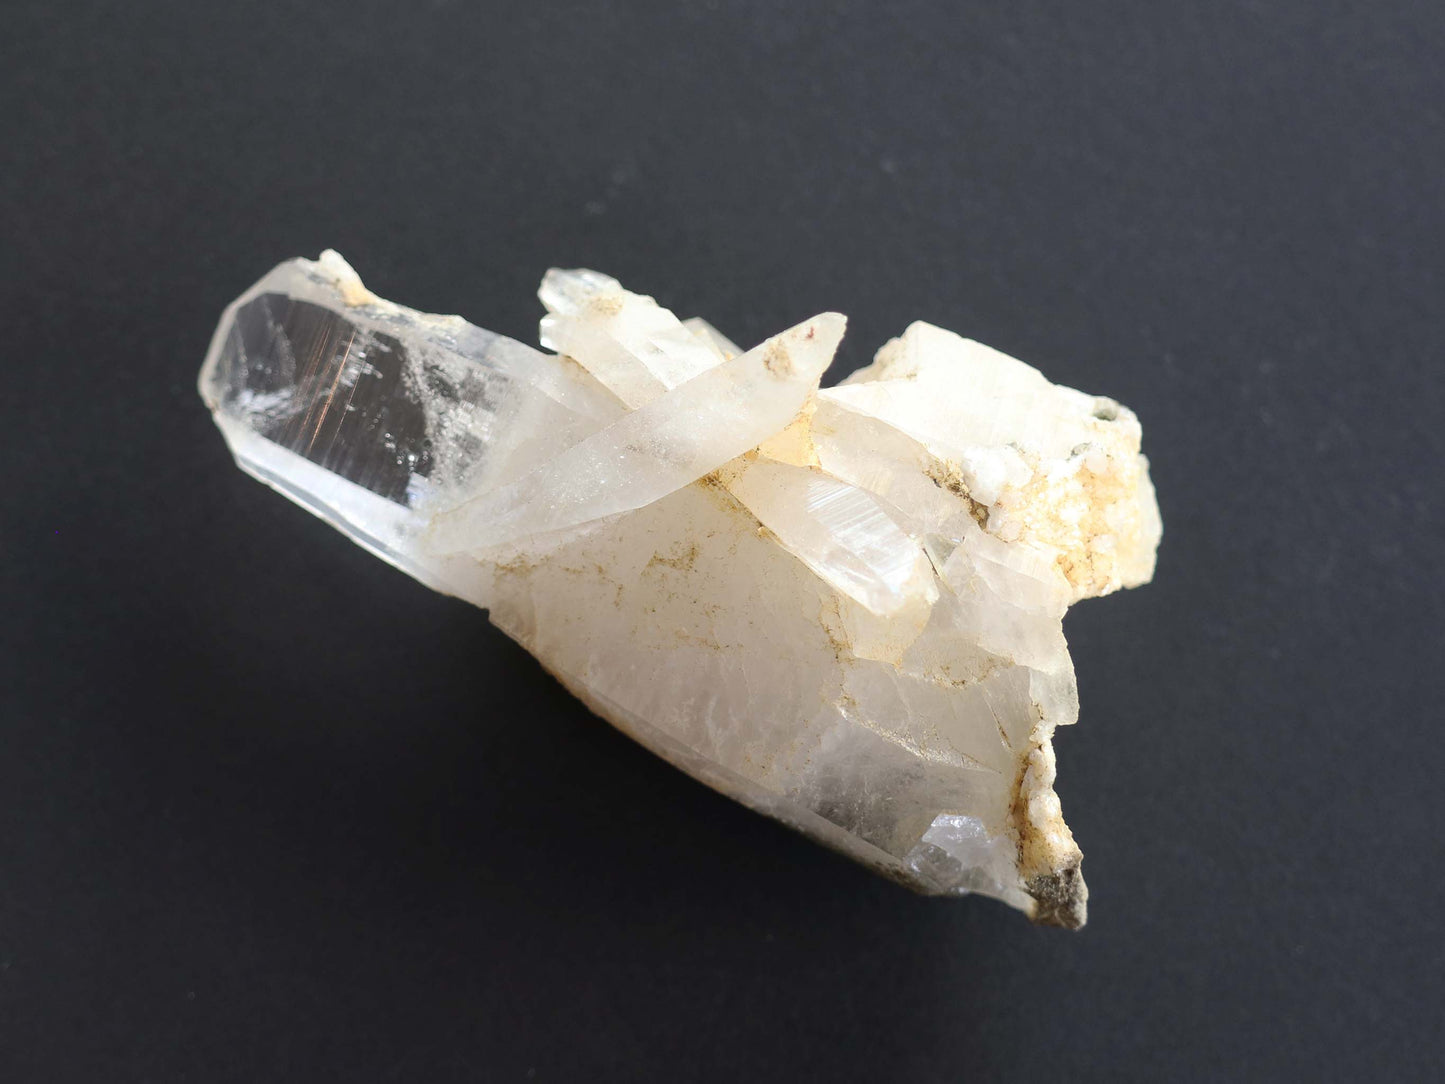 クロライト、タビュラー、ガネーシュヒマール産 ヒマラヤ水晶原石PN:GG-020